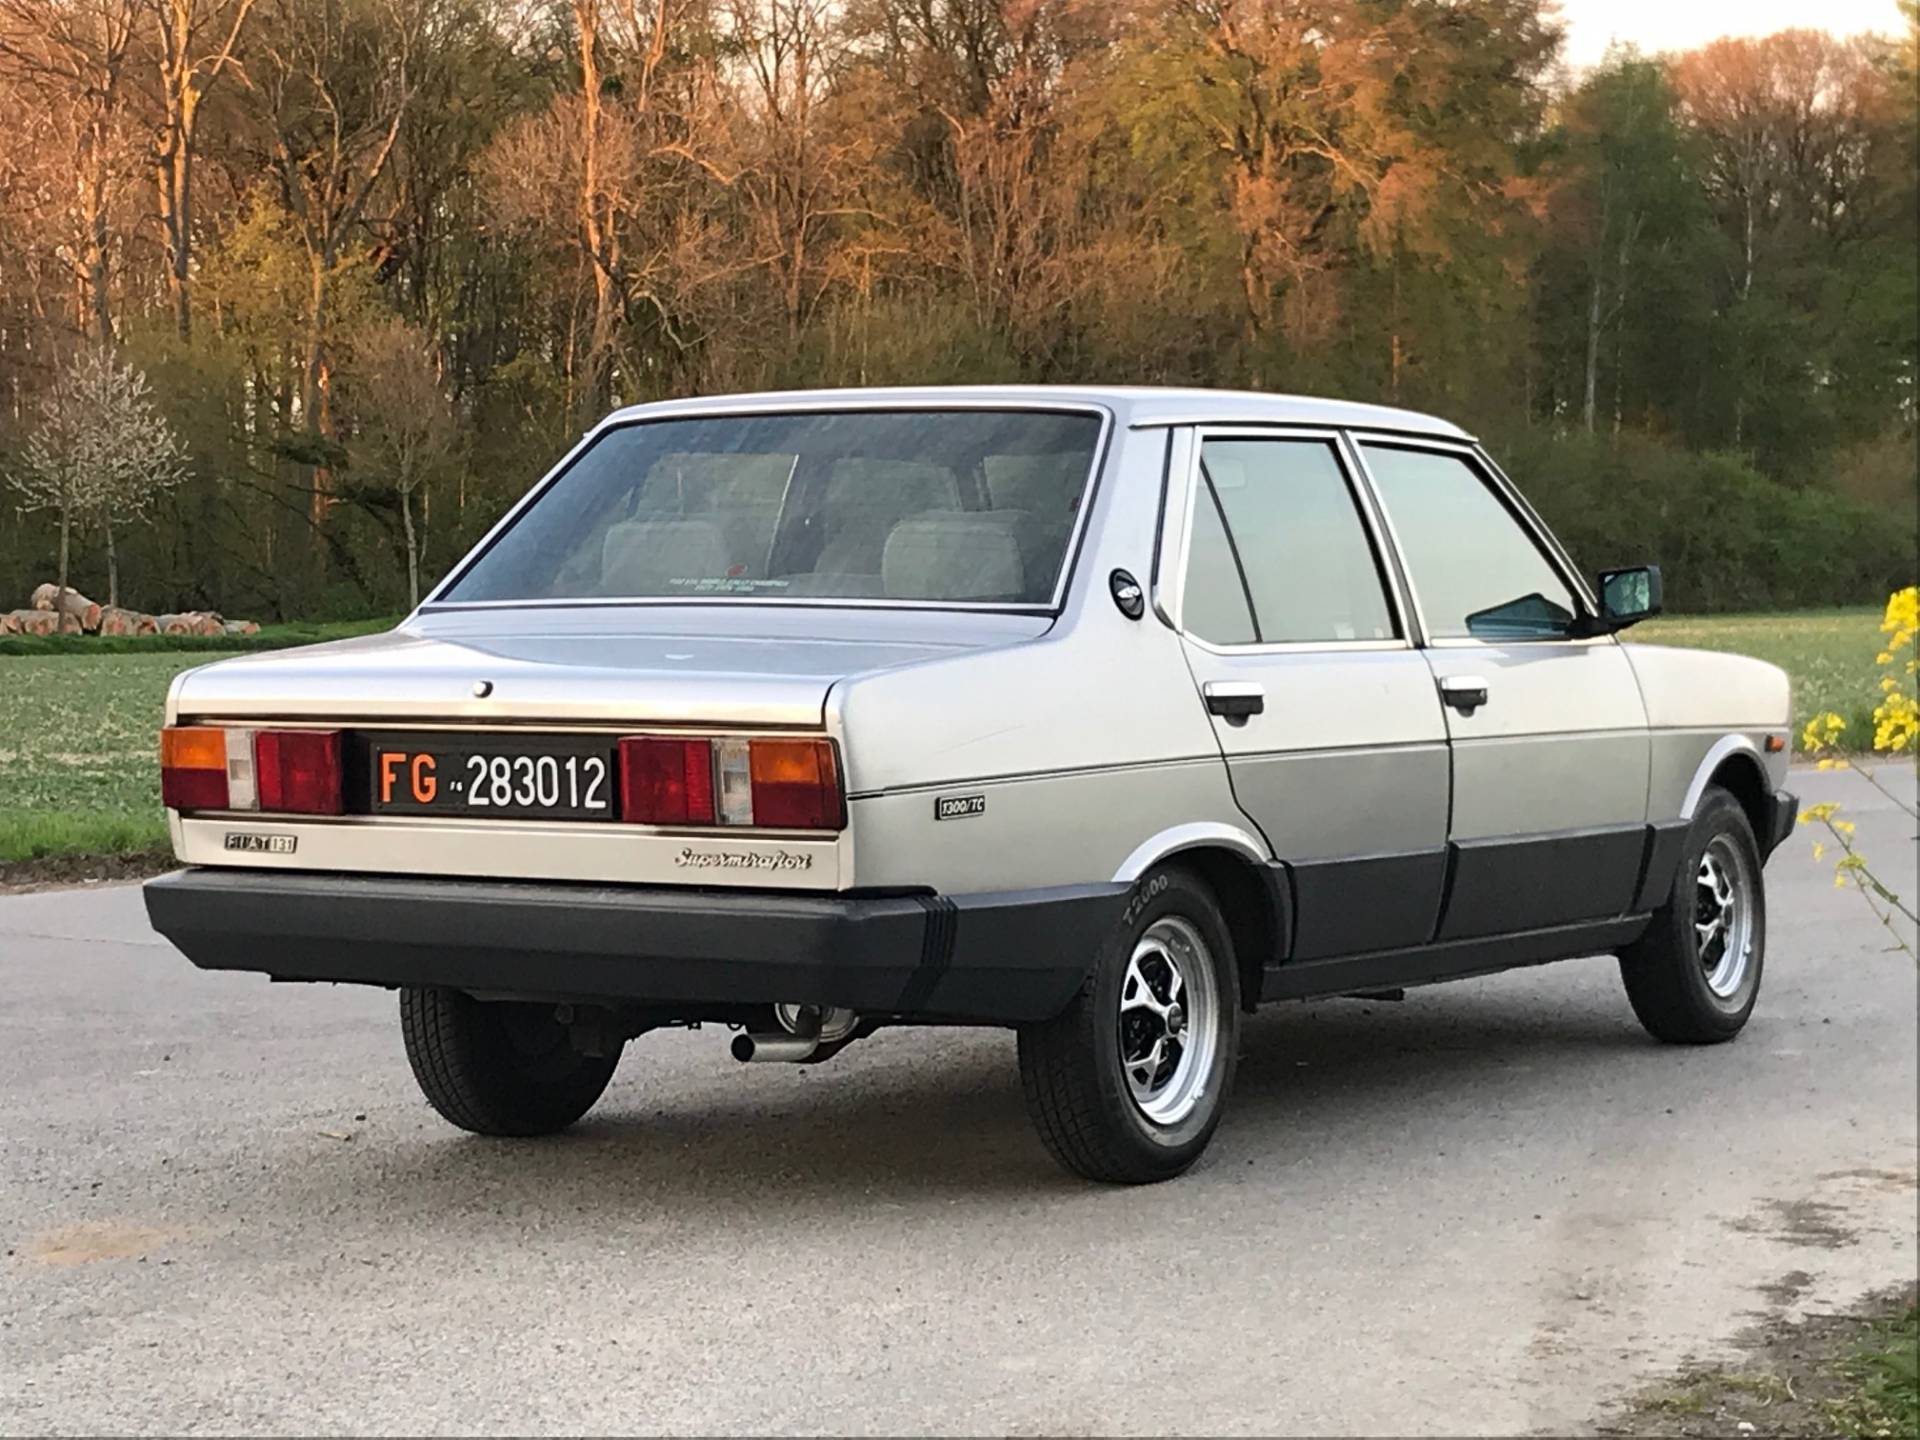 FIAT 131 Supermirafiori (1982) für EUR 4.950 kaufen